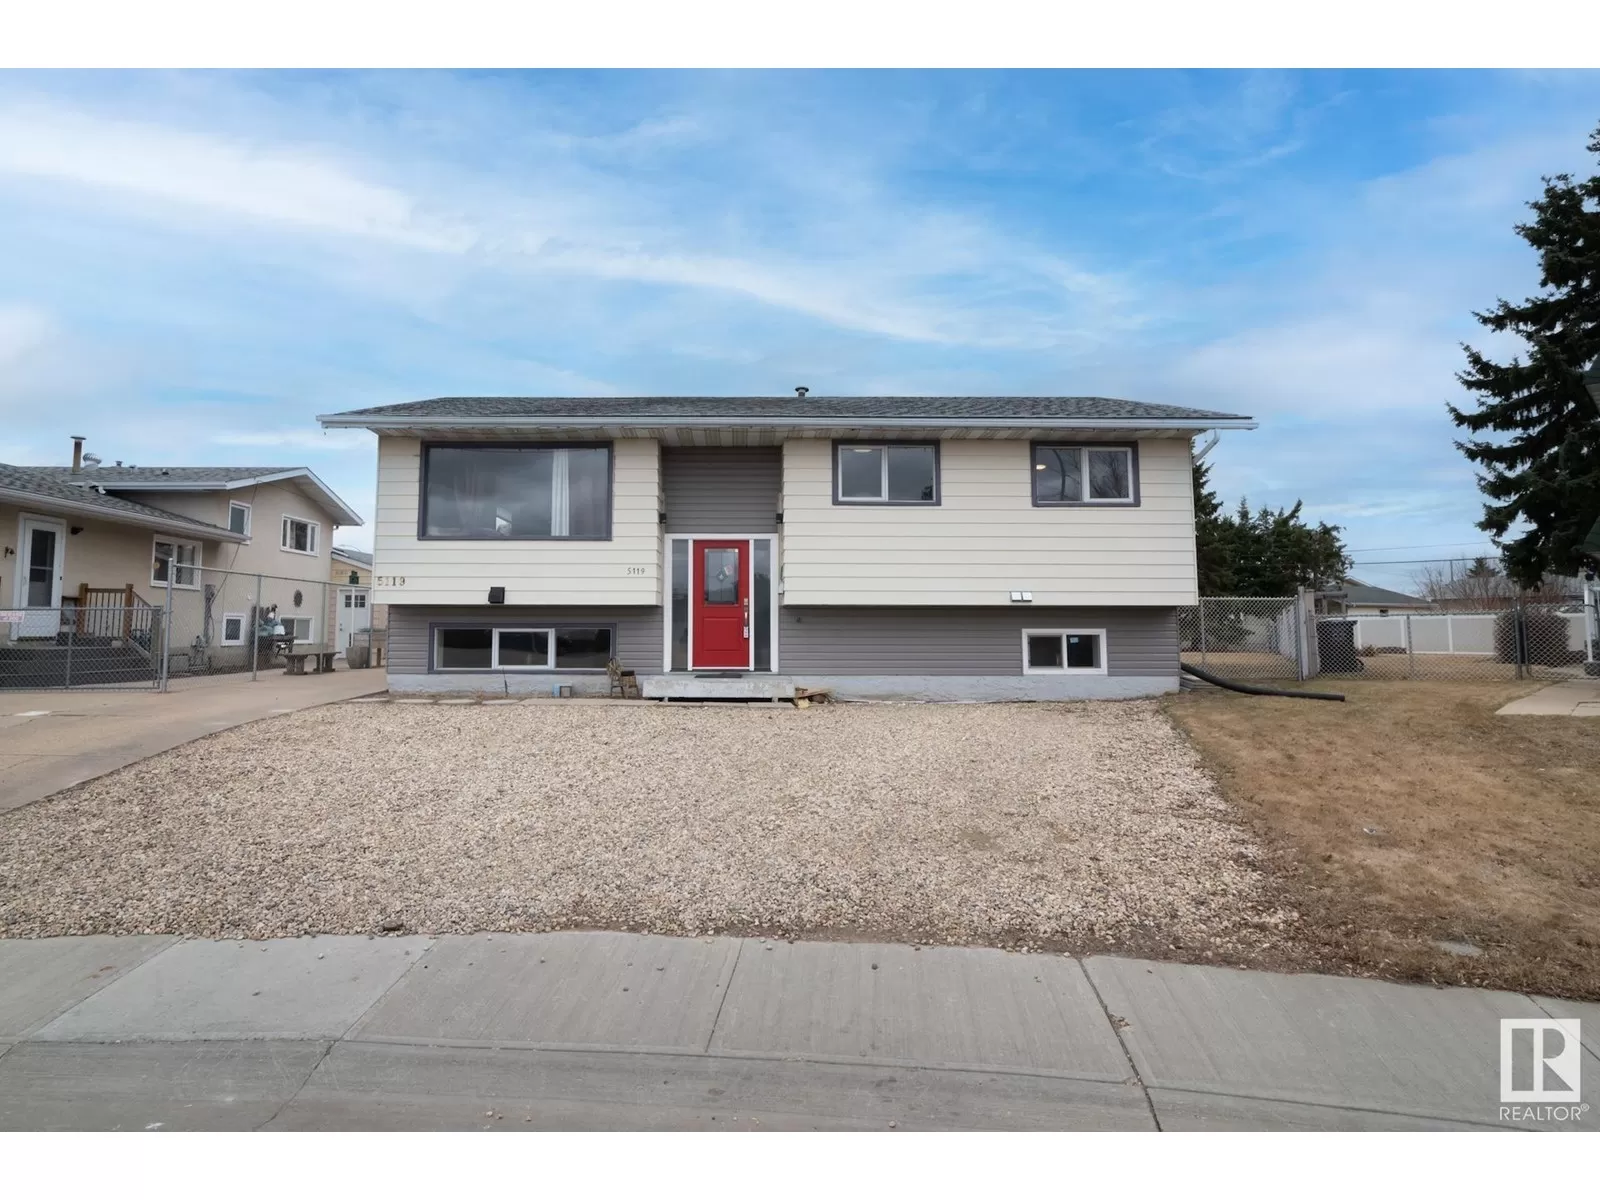 House for rent: 5119 55 Av, Leduc, Alberta T9E 5N7